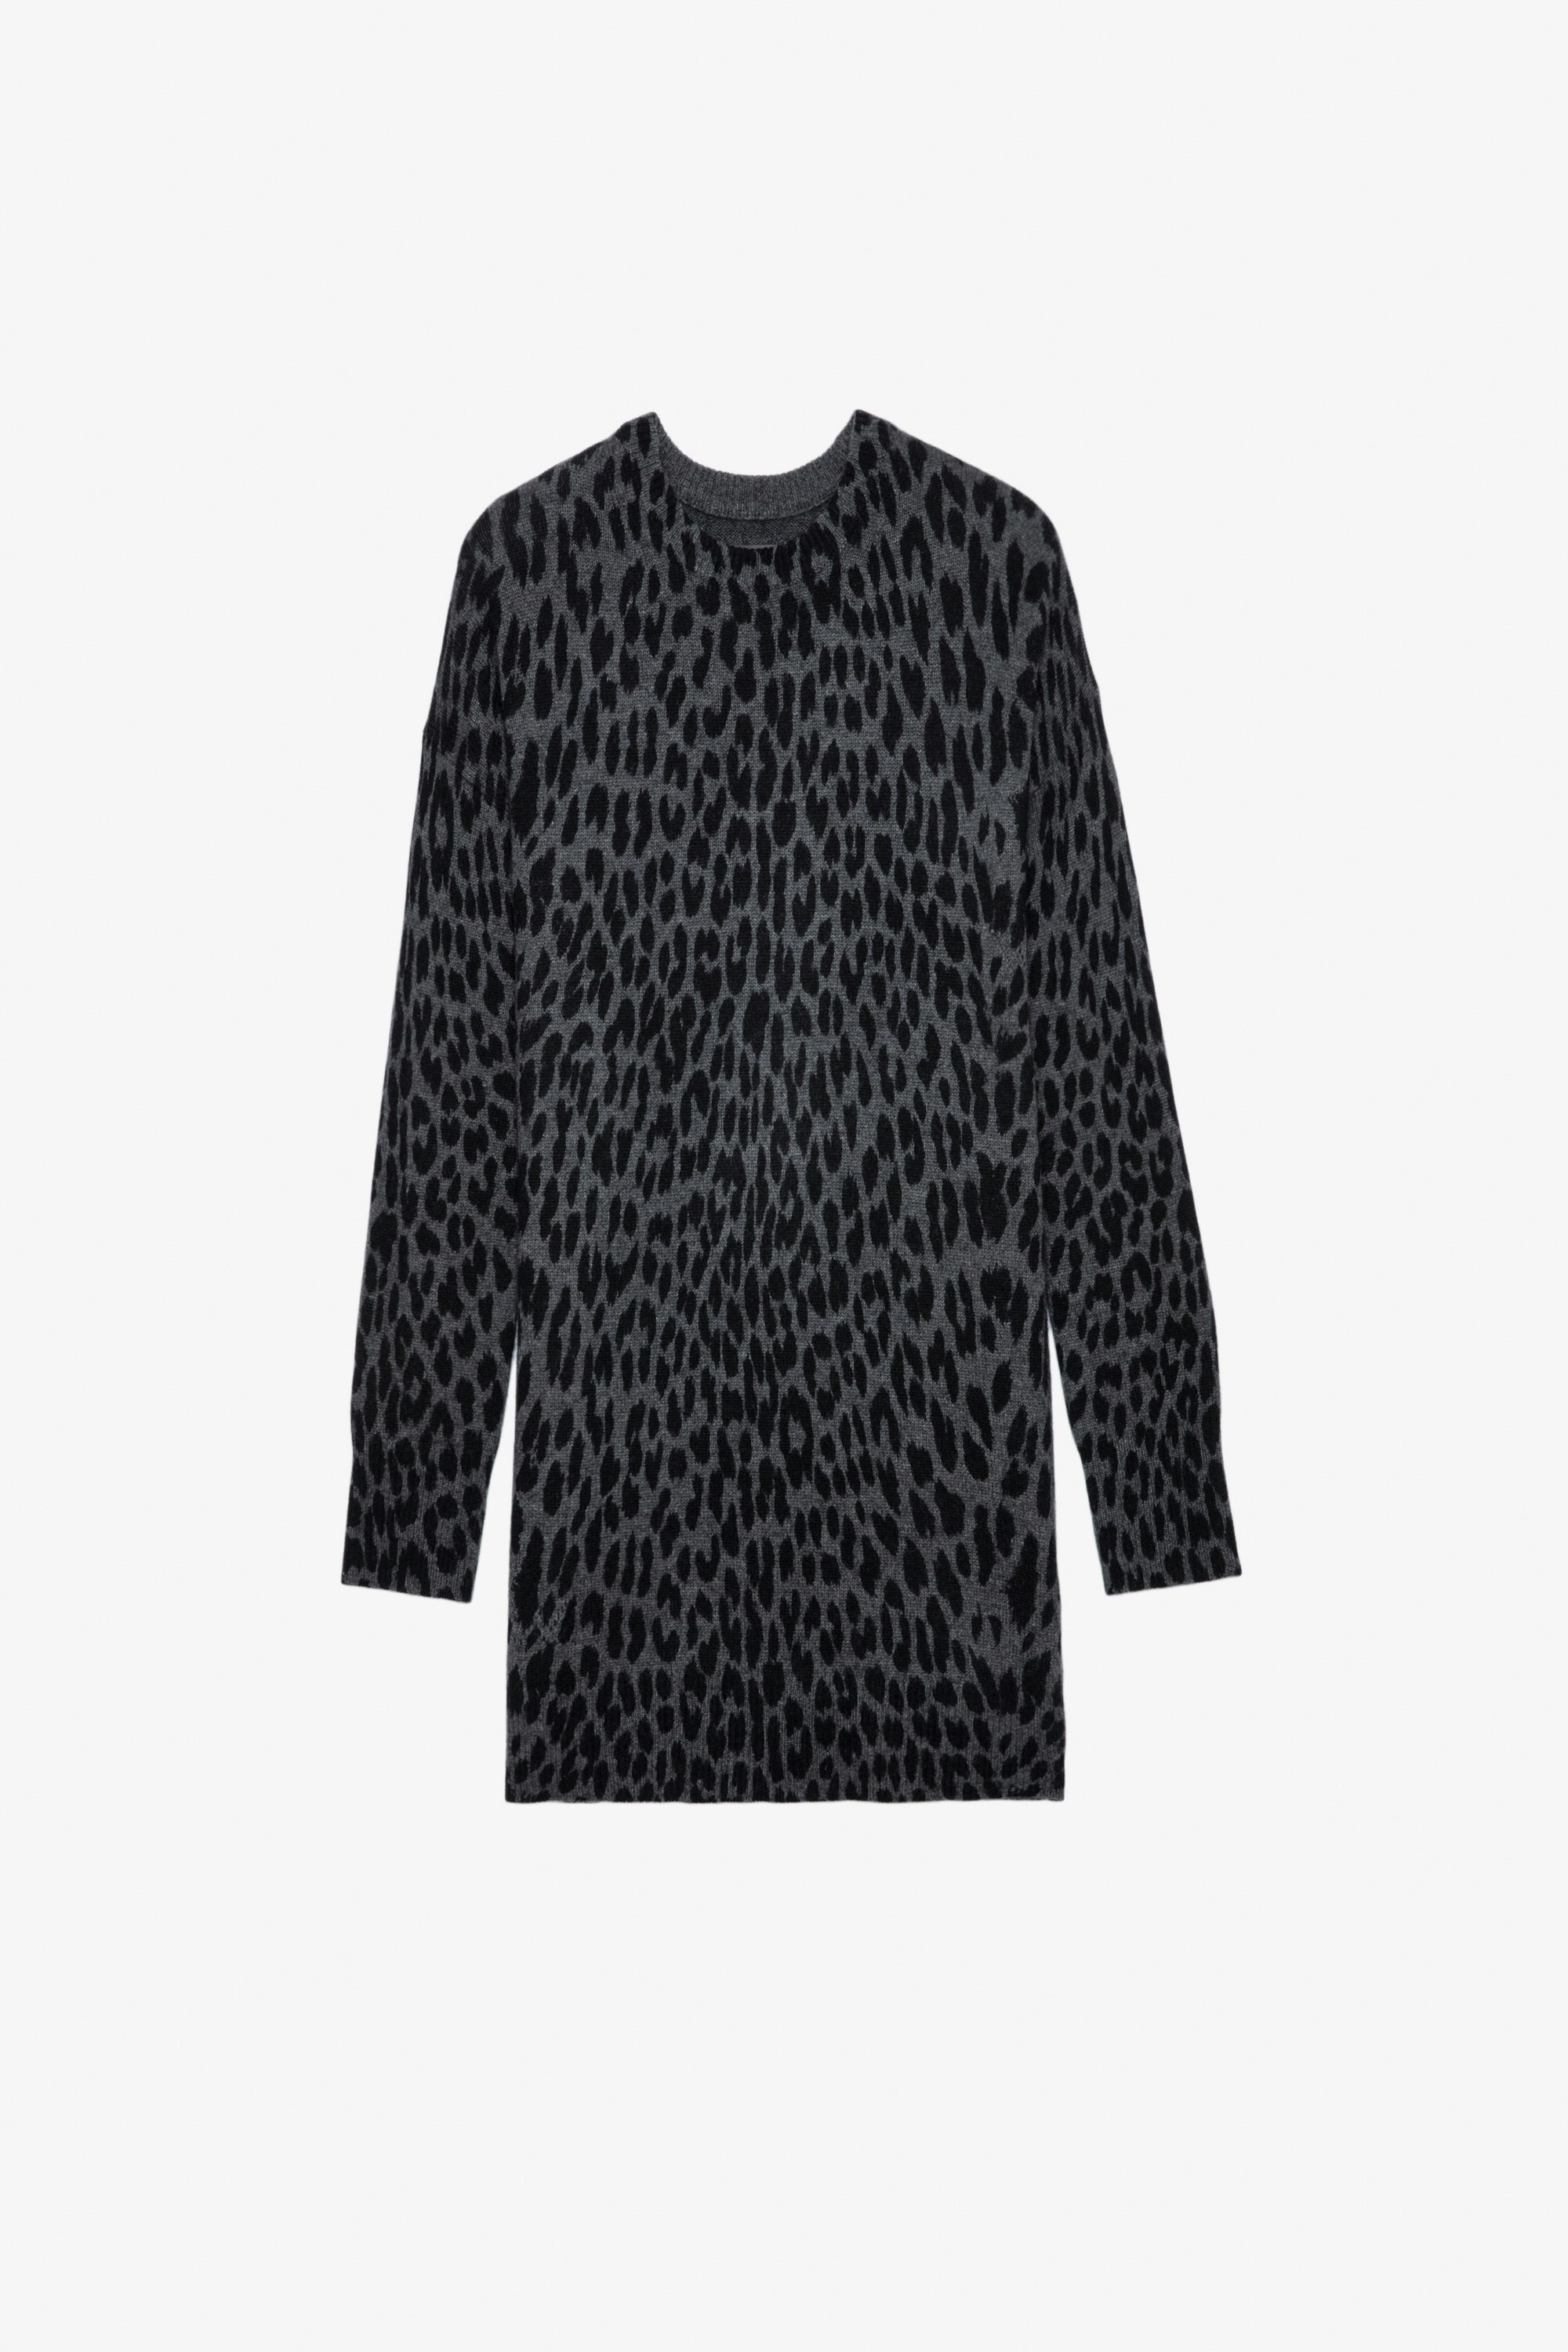 Vestido de cachemira con efecto leopardo Malia - Vestido corto gris de cachemira con estampado de leopardo para mujer.